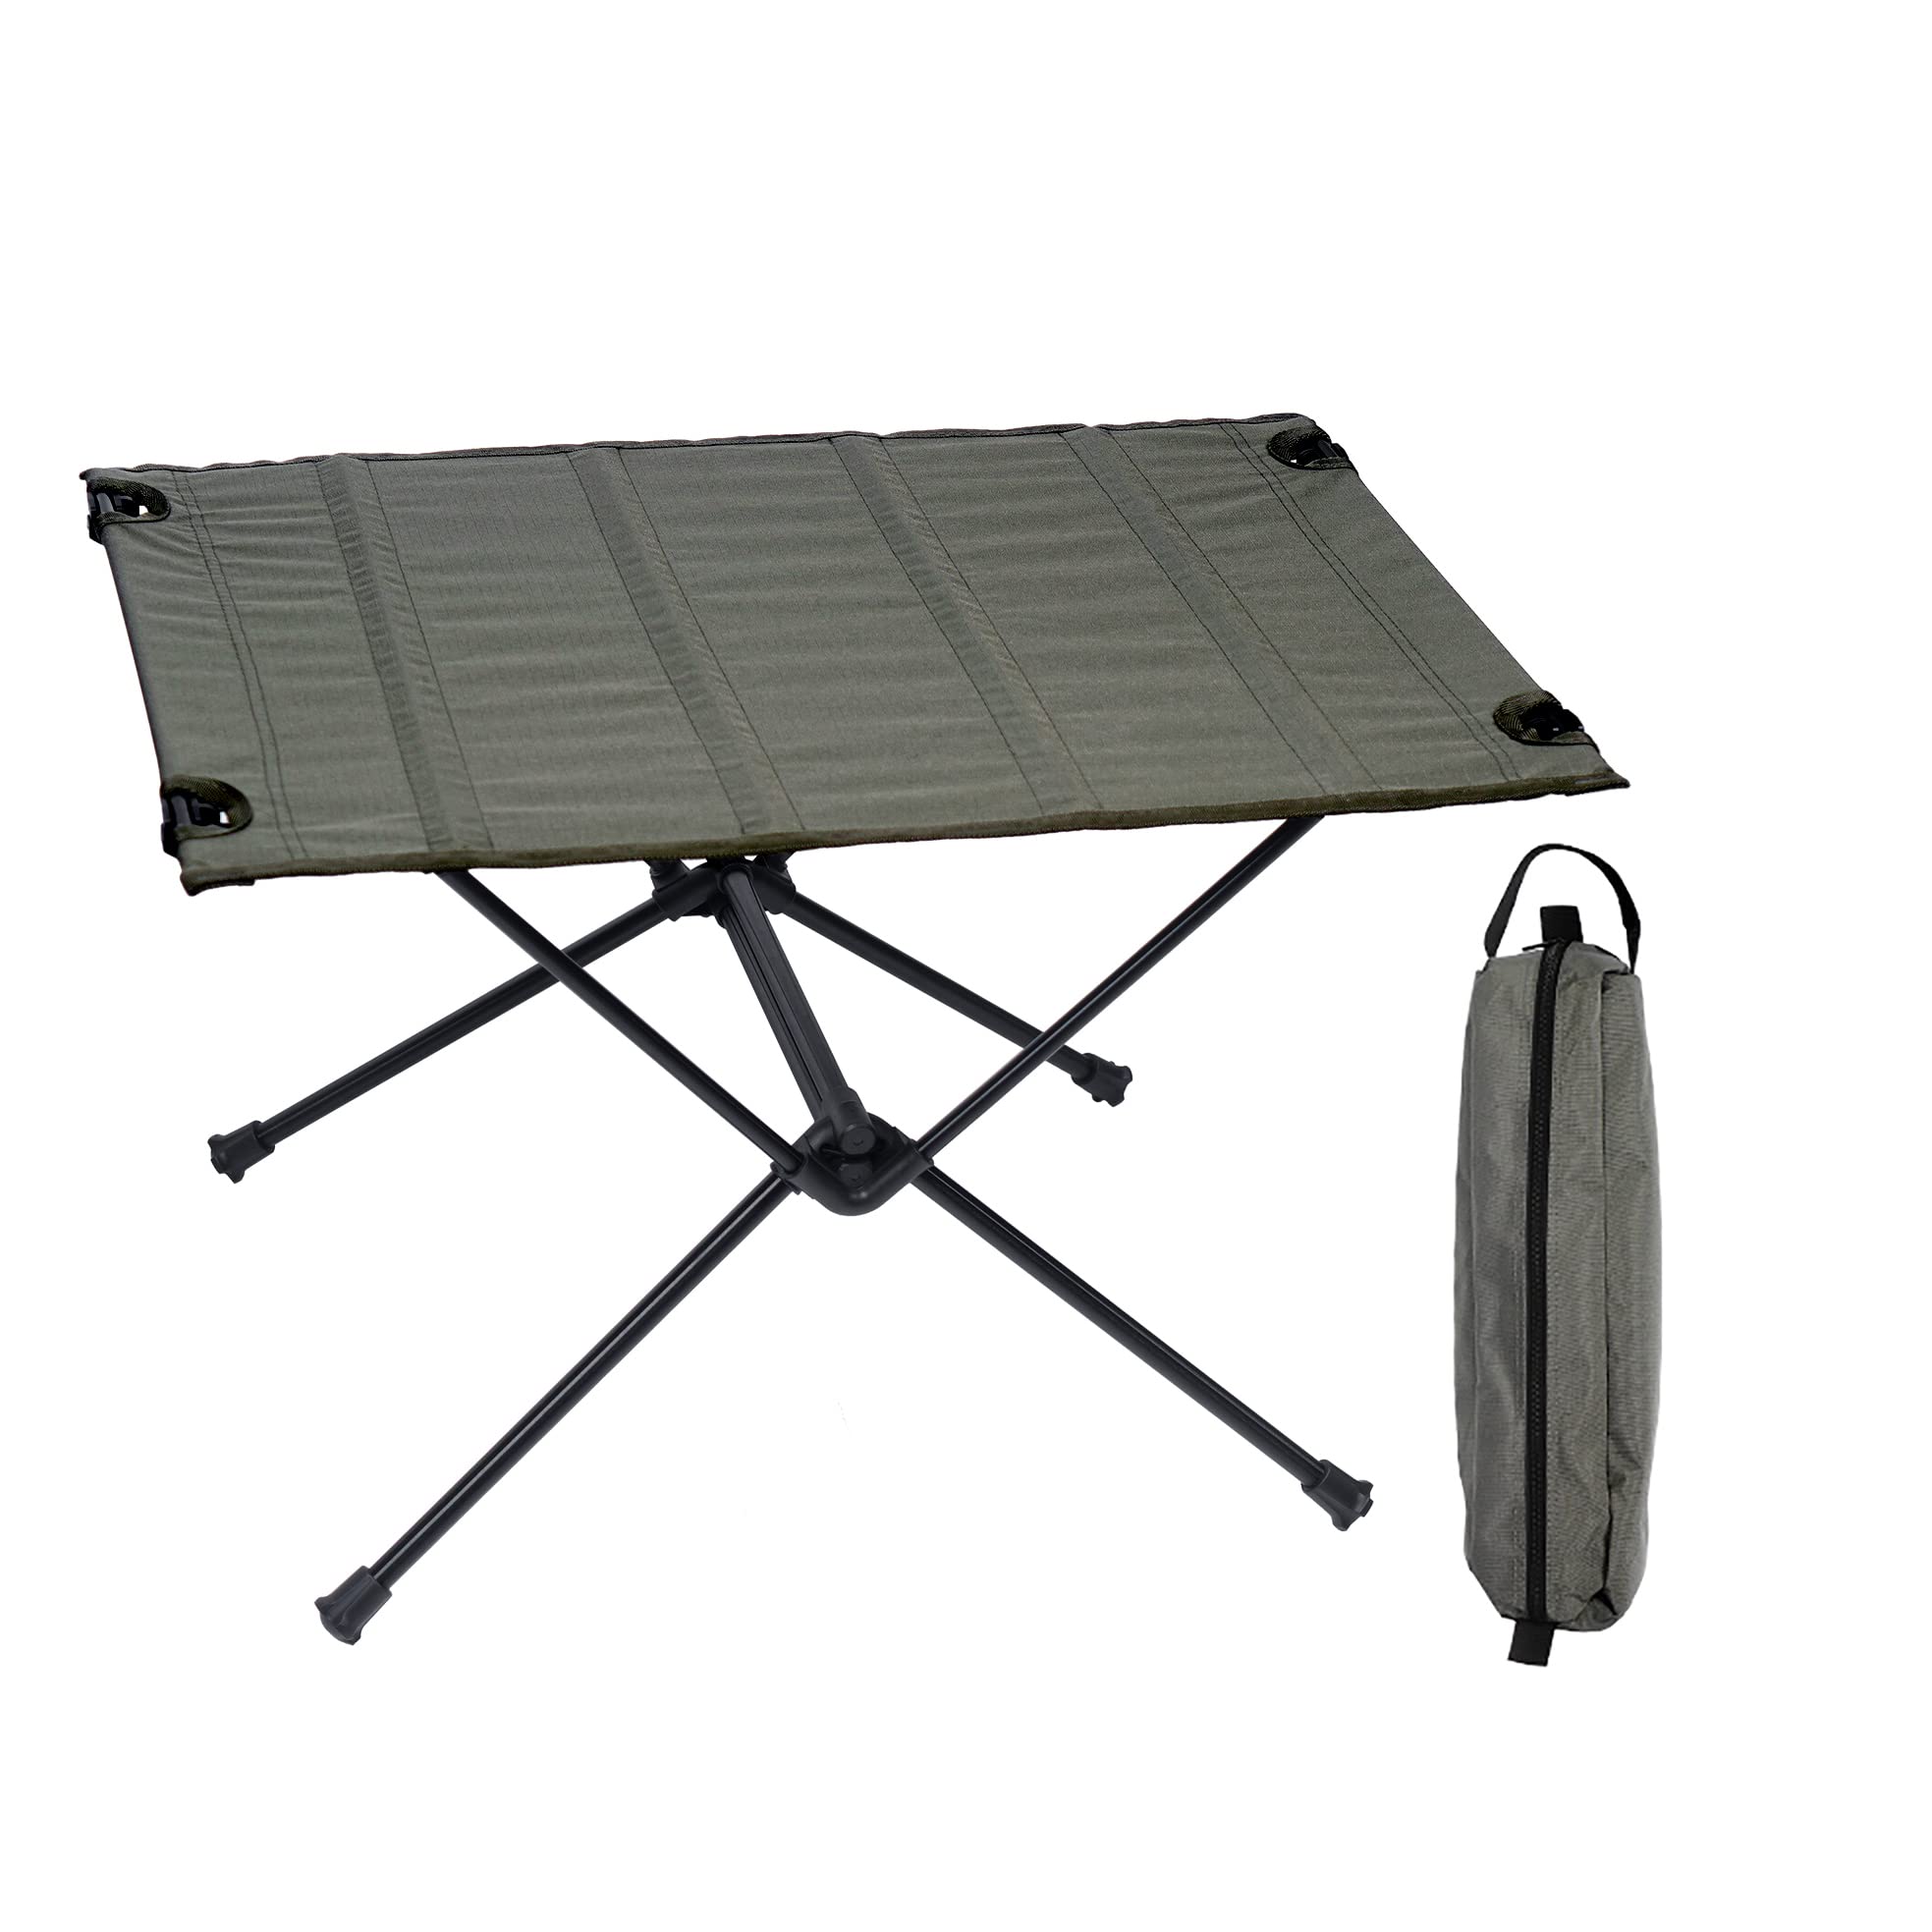 送料無料Apurioni Lightweight Folding Camping Table Washable Fabric Compact Portable Table with Storage Bag for Outdoor